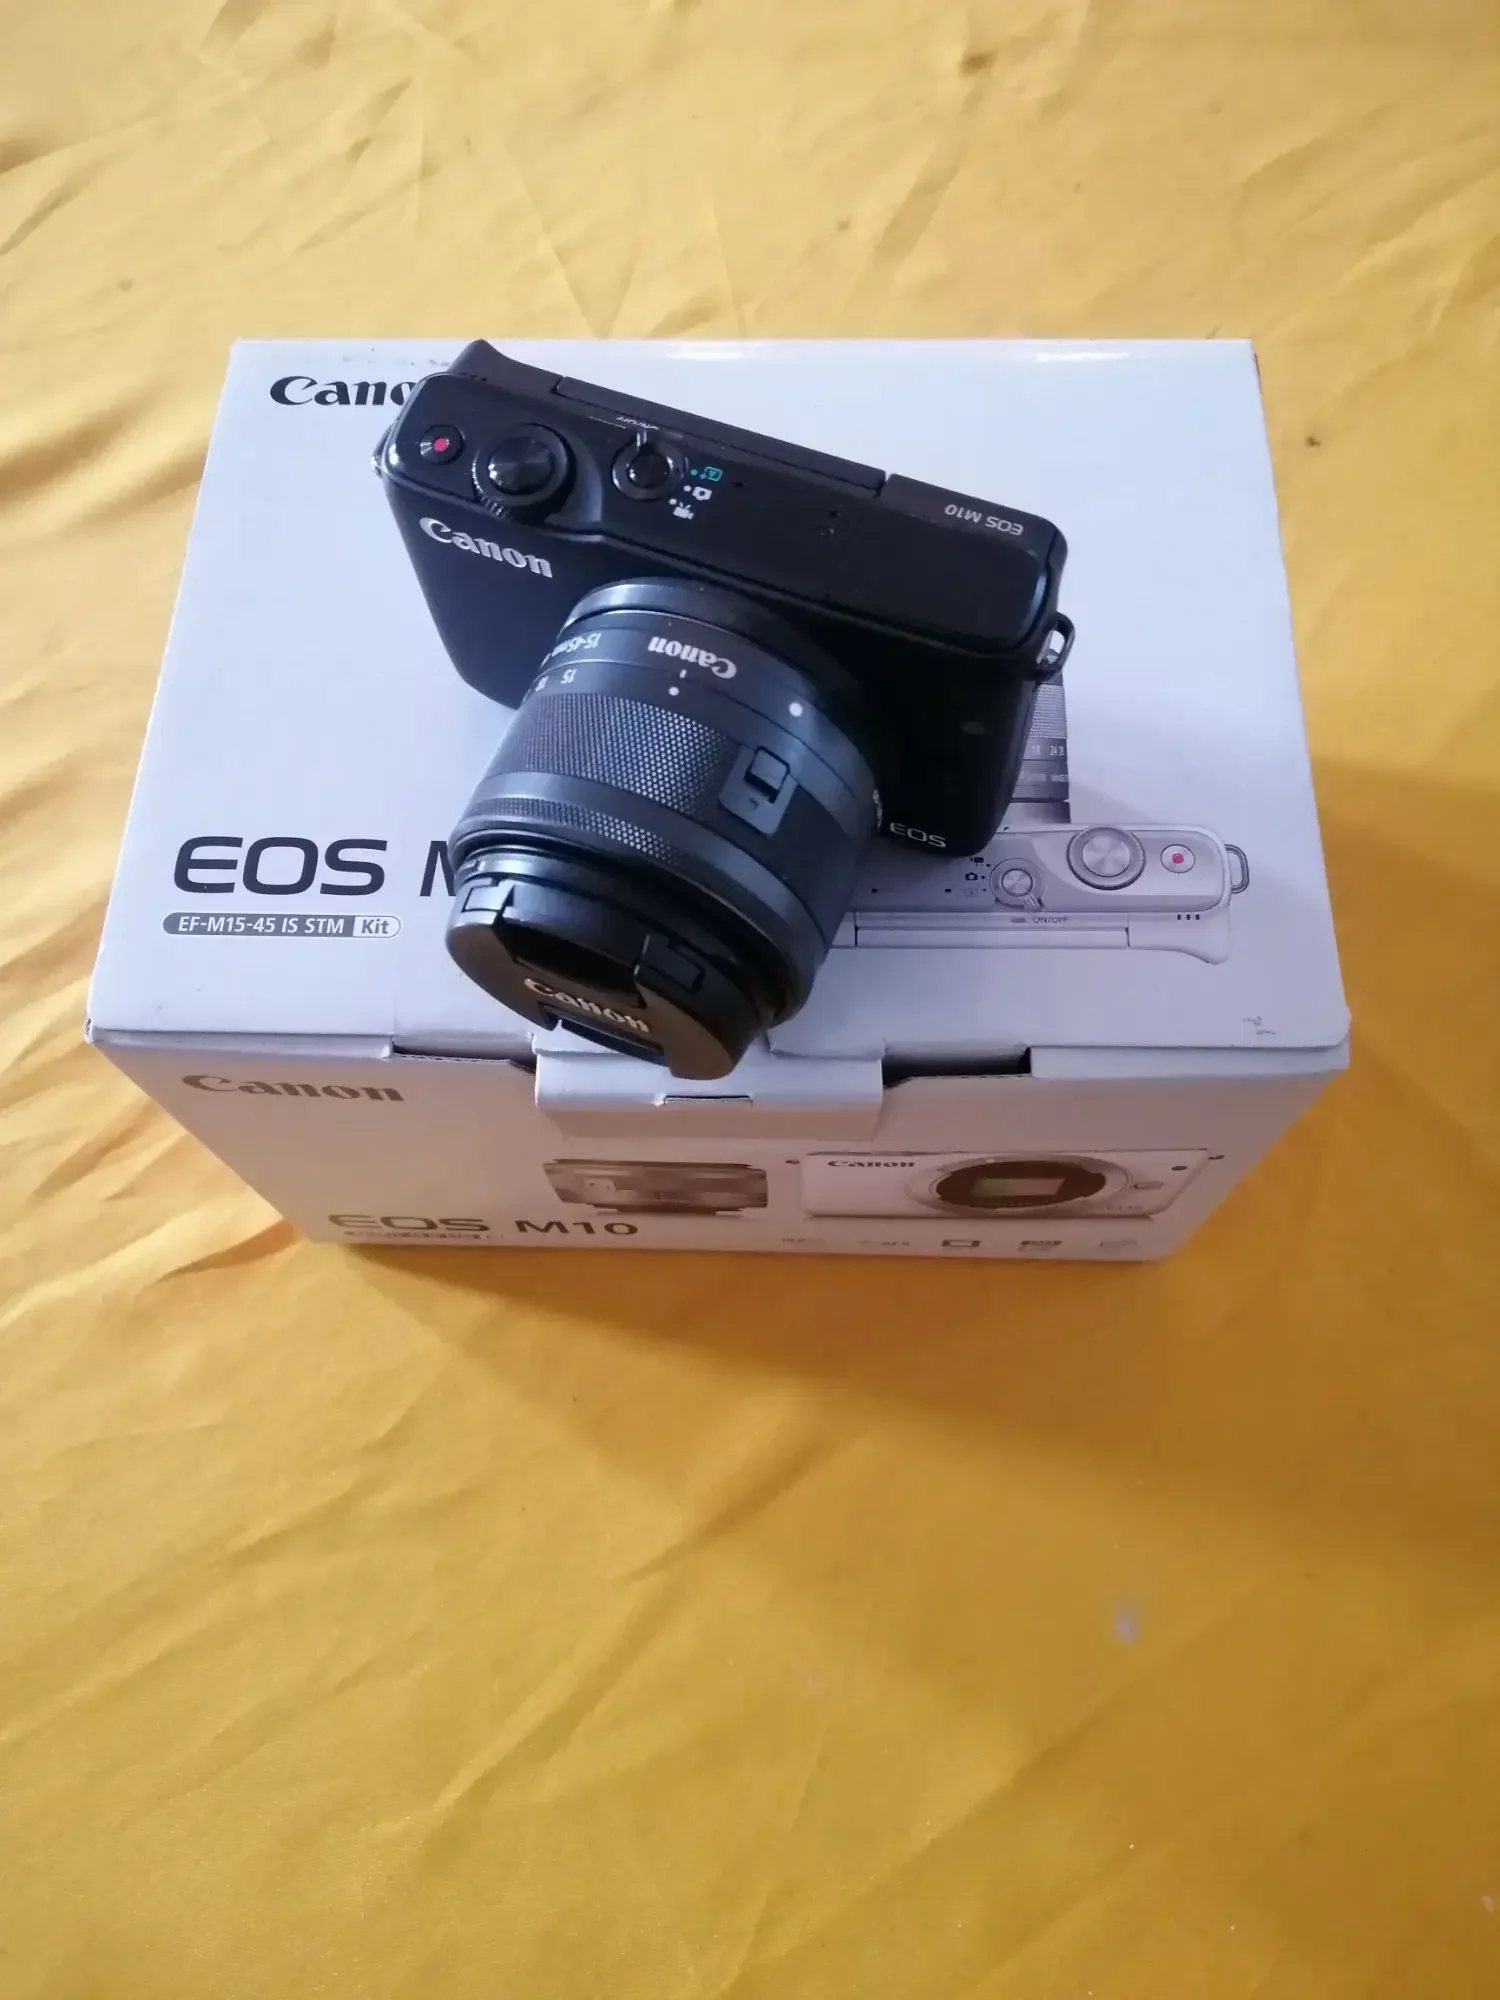 CANON EOS M10 Dan Lensa Kit 15-45mm fullset